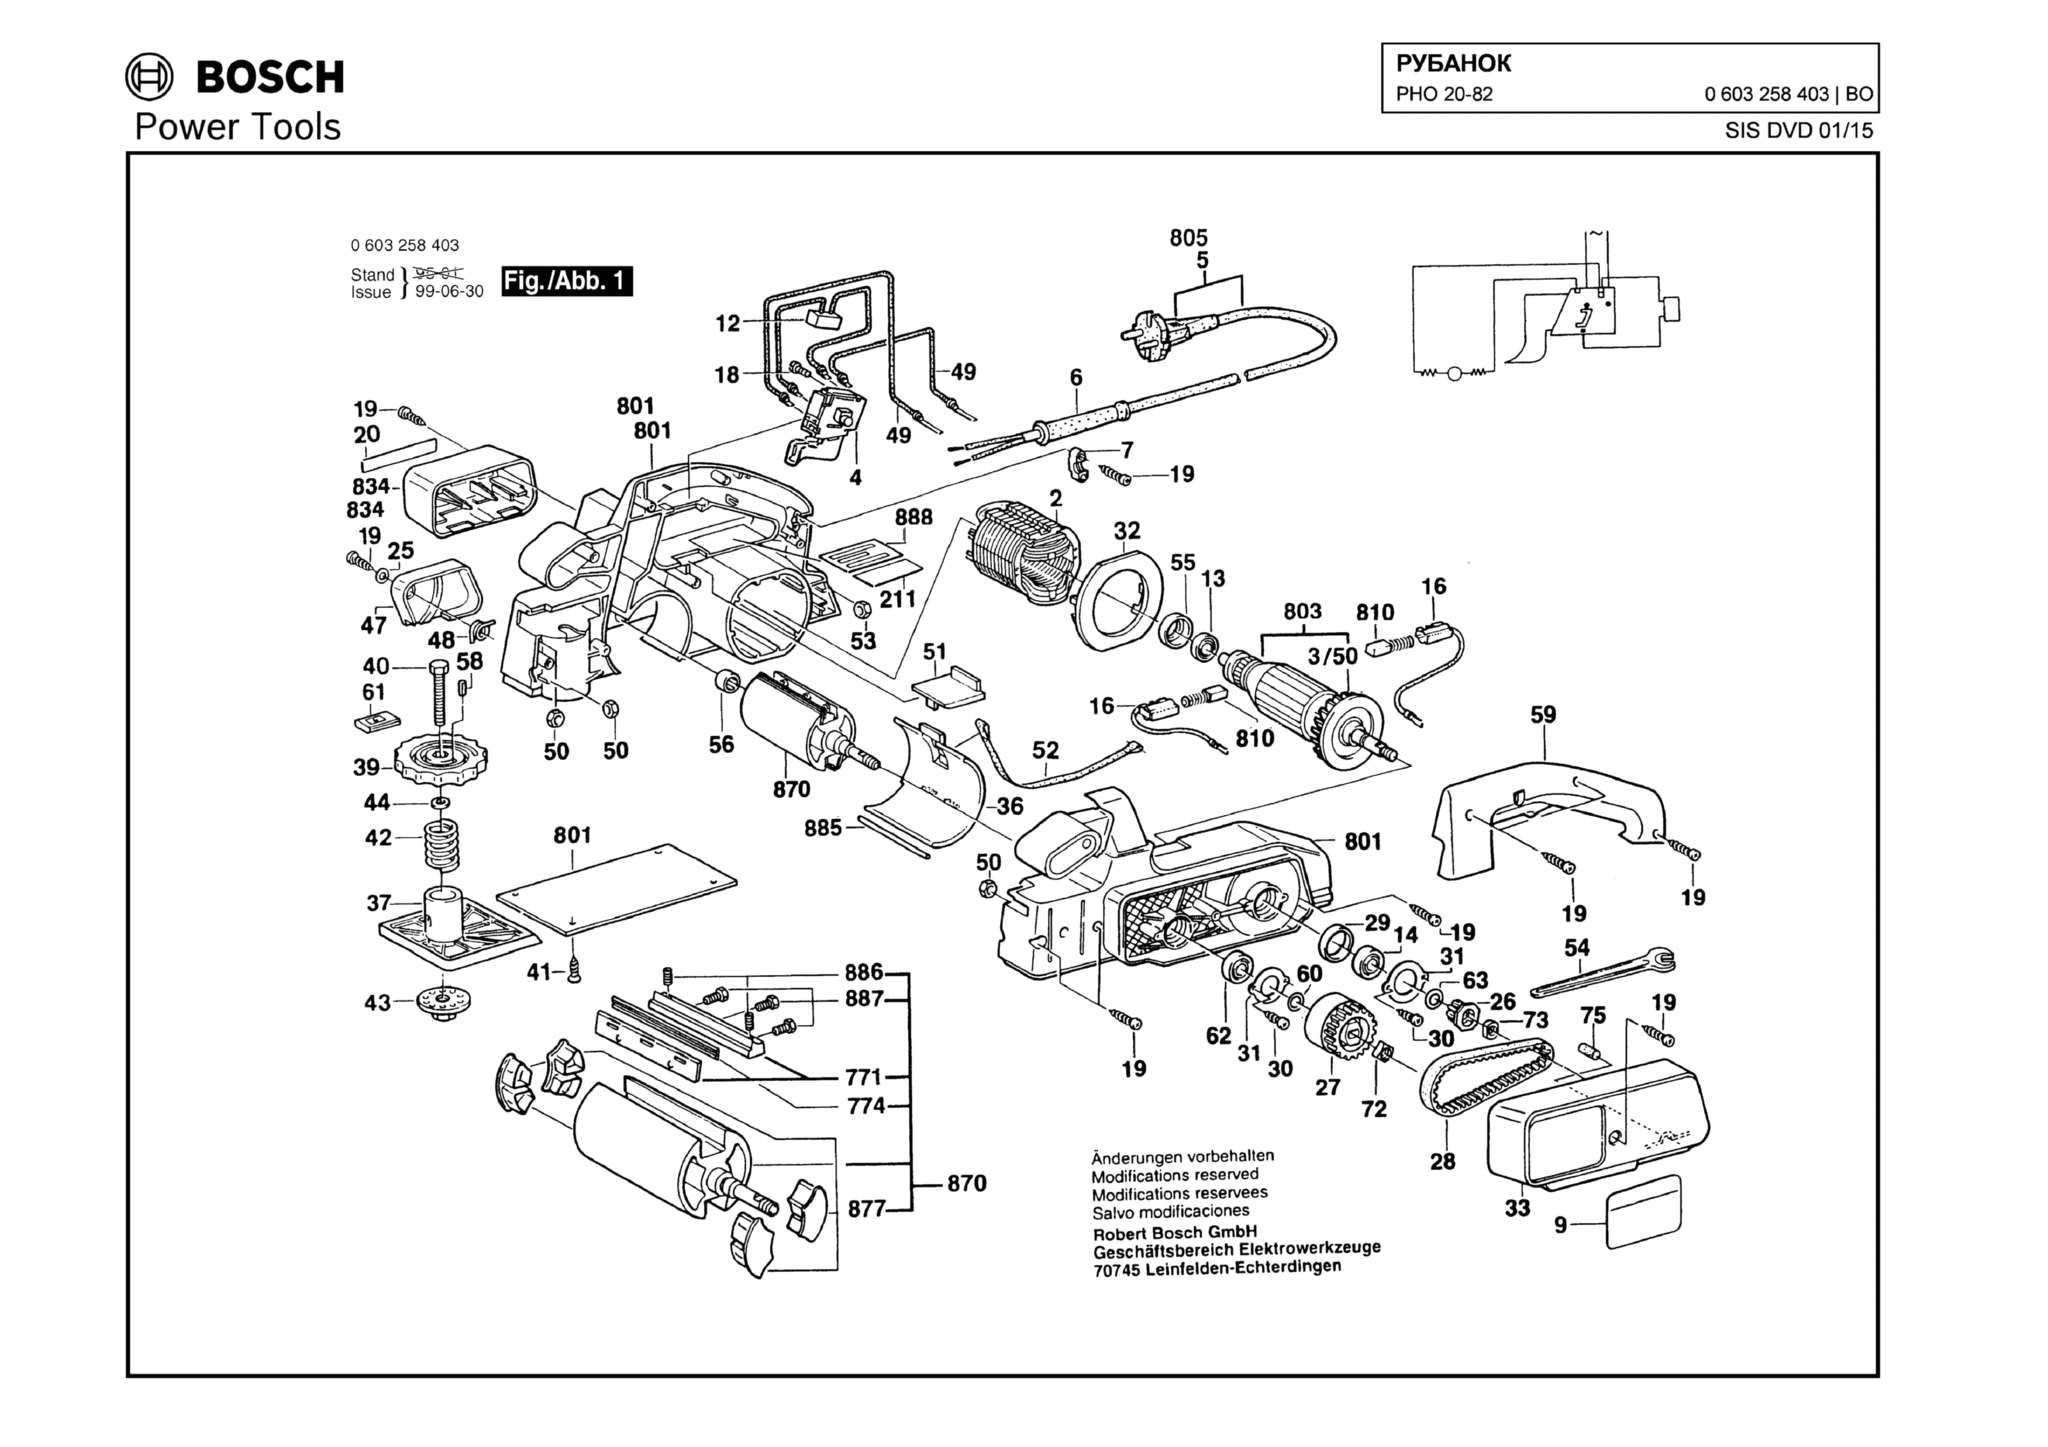 Запчасти, схема и деталировка Bosch PHO 20-82 (ТИП 0603258403)